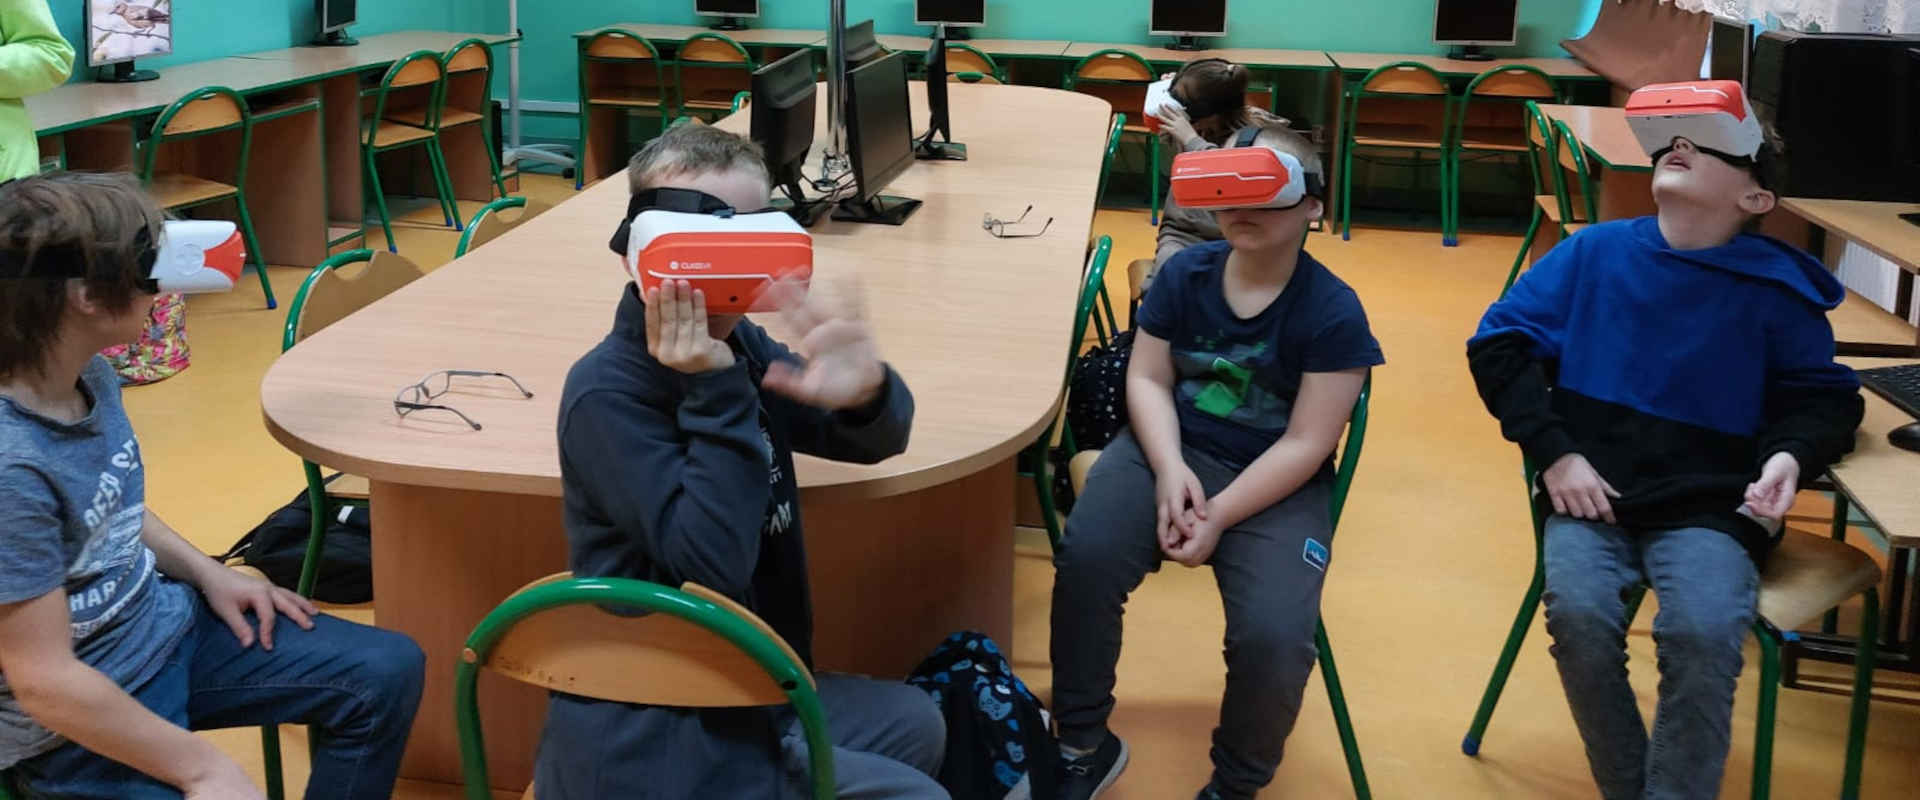 Chłopcy z założonymi okularami VR